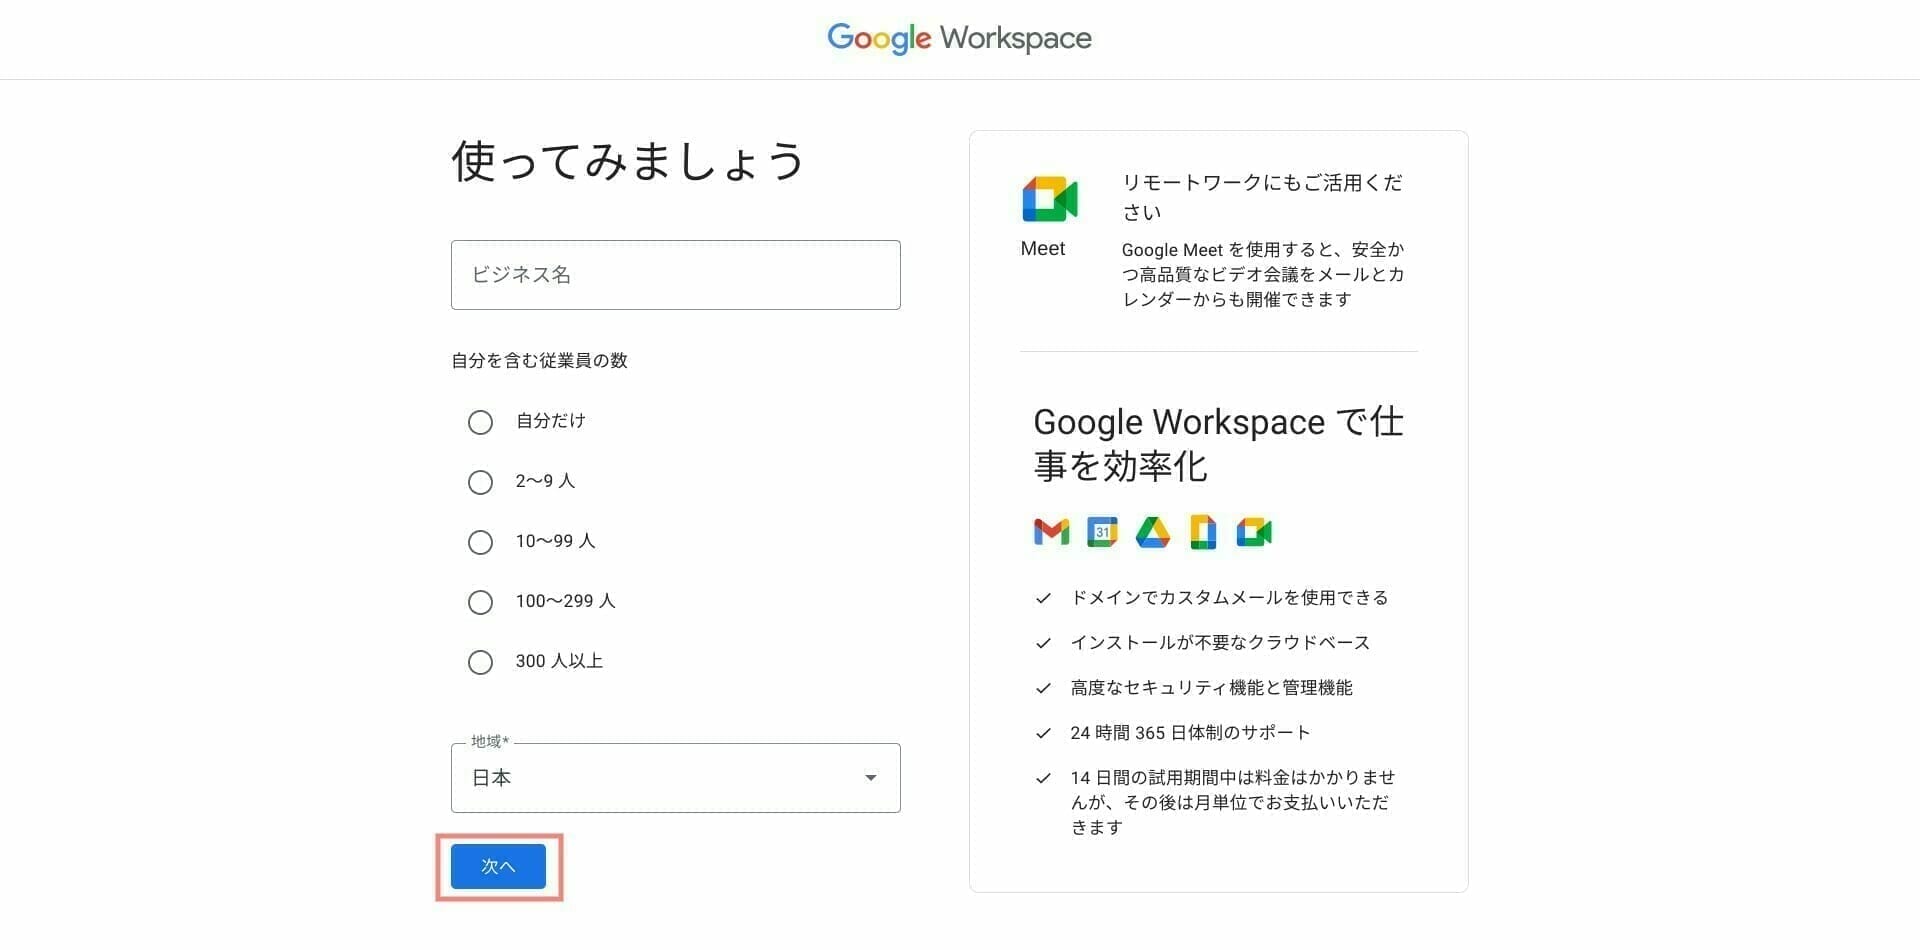 Google Workspace：組織情報を入力する